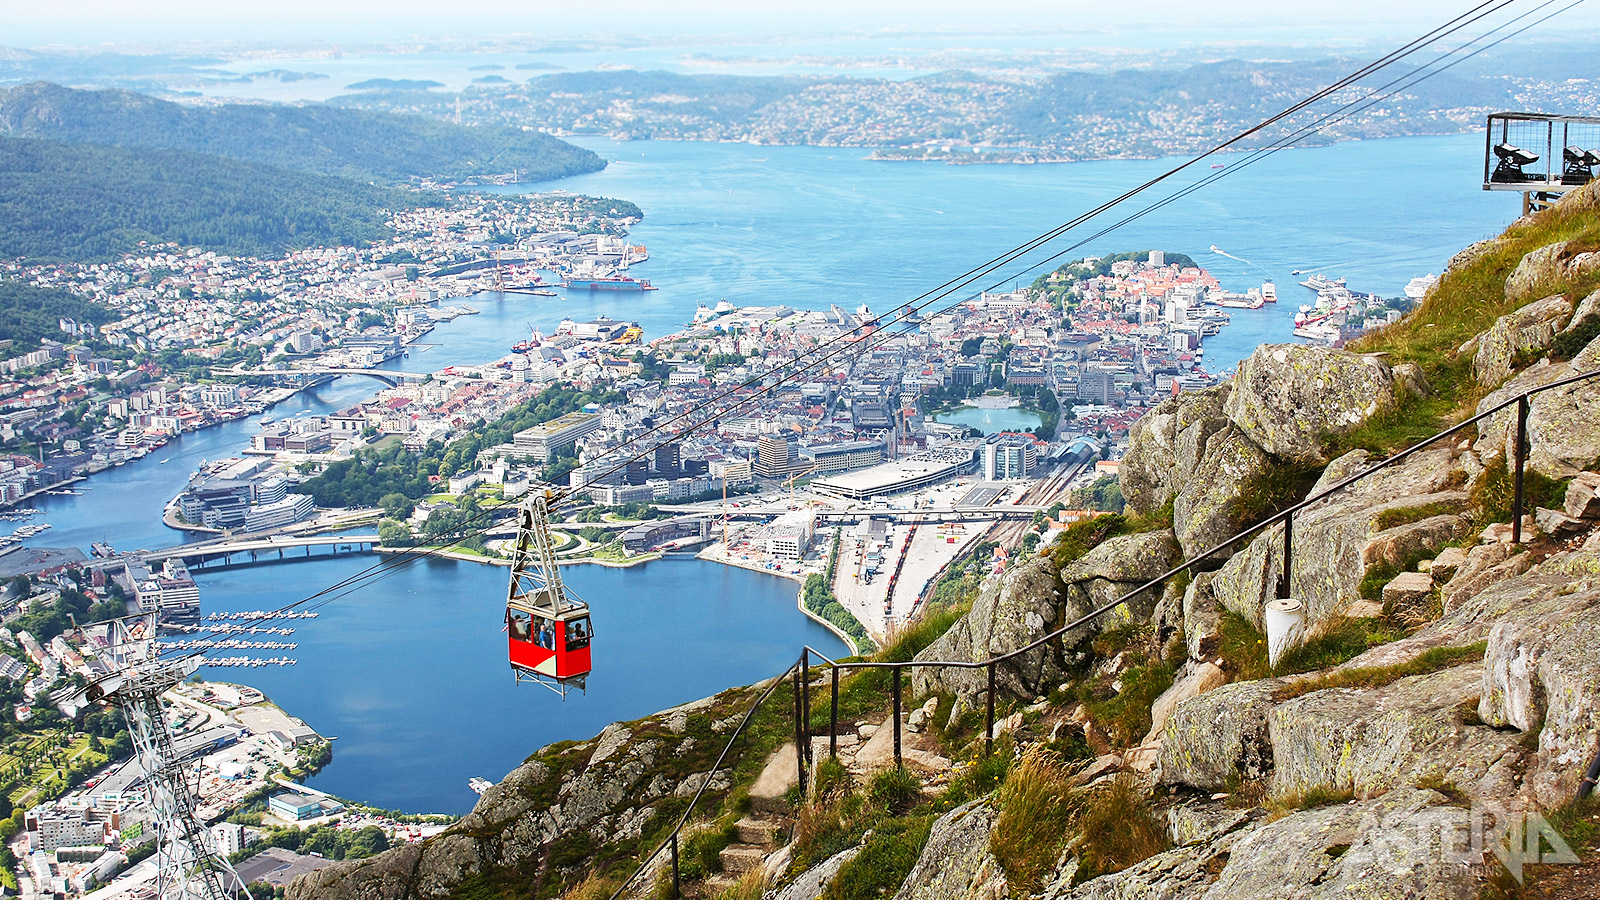 De traditionele Fløibanen is een kabellift die je meeneemt tot aan het klassieke en beroemde uitzicht over Bergen